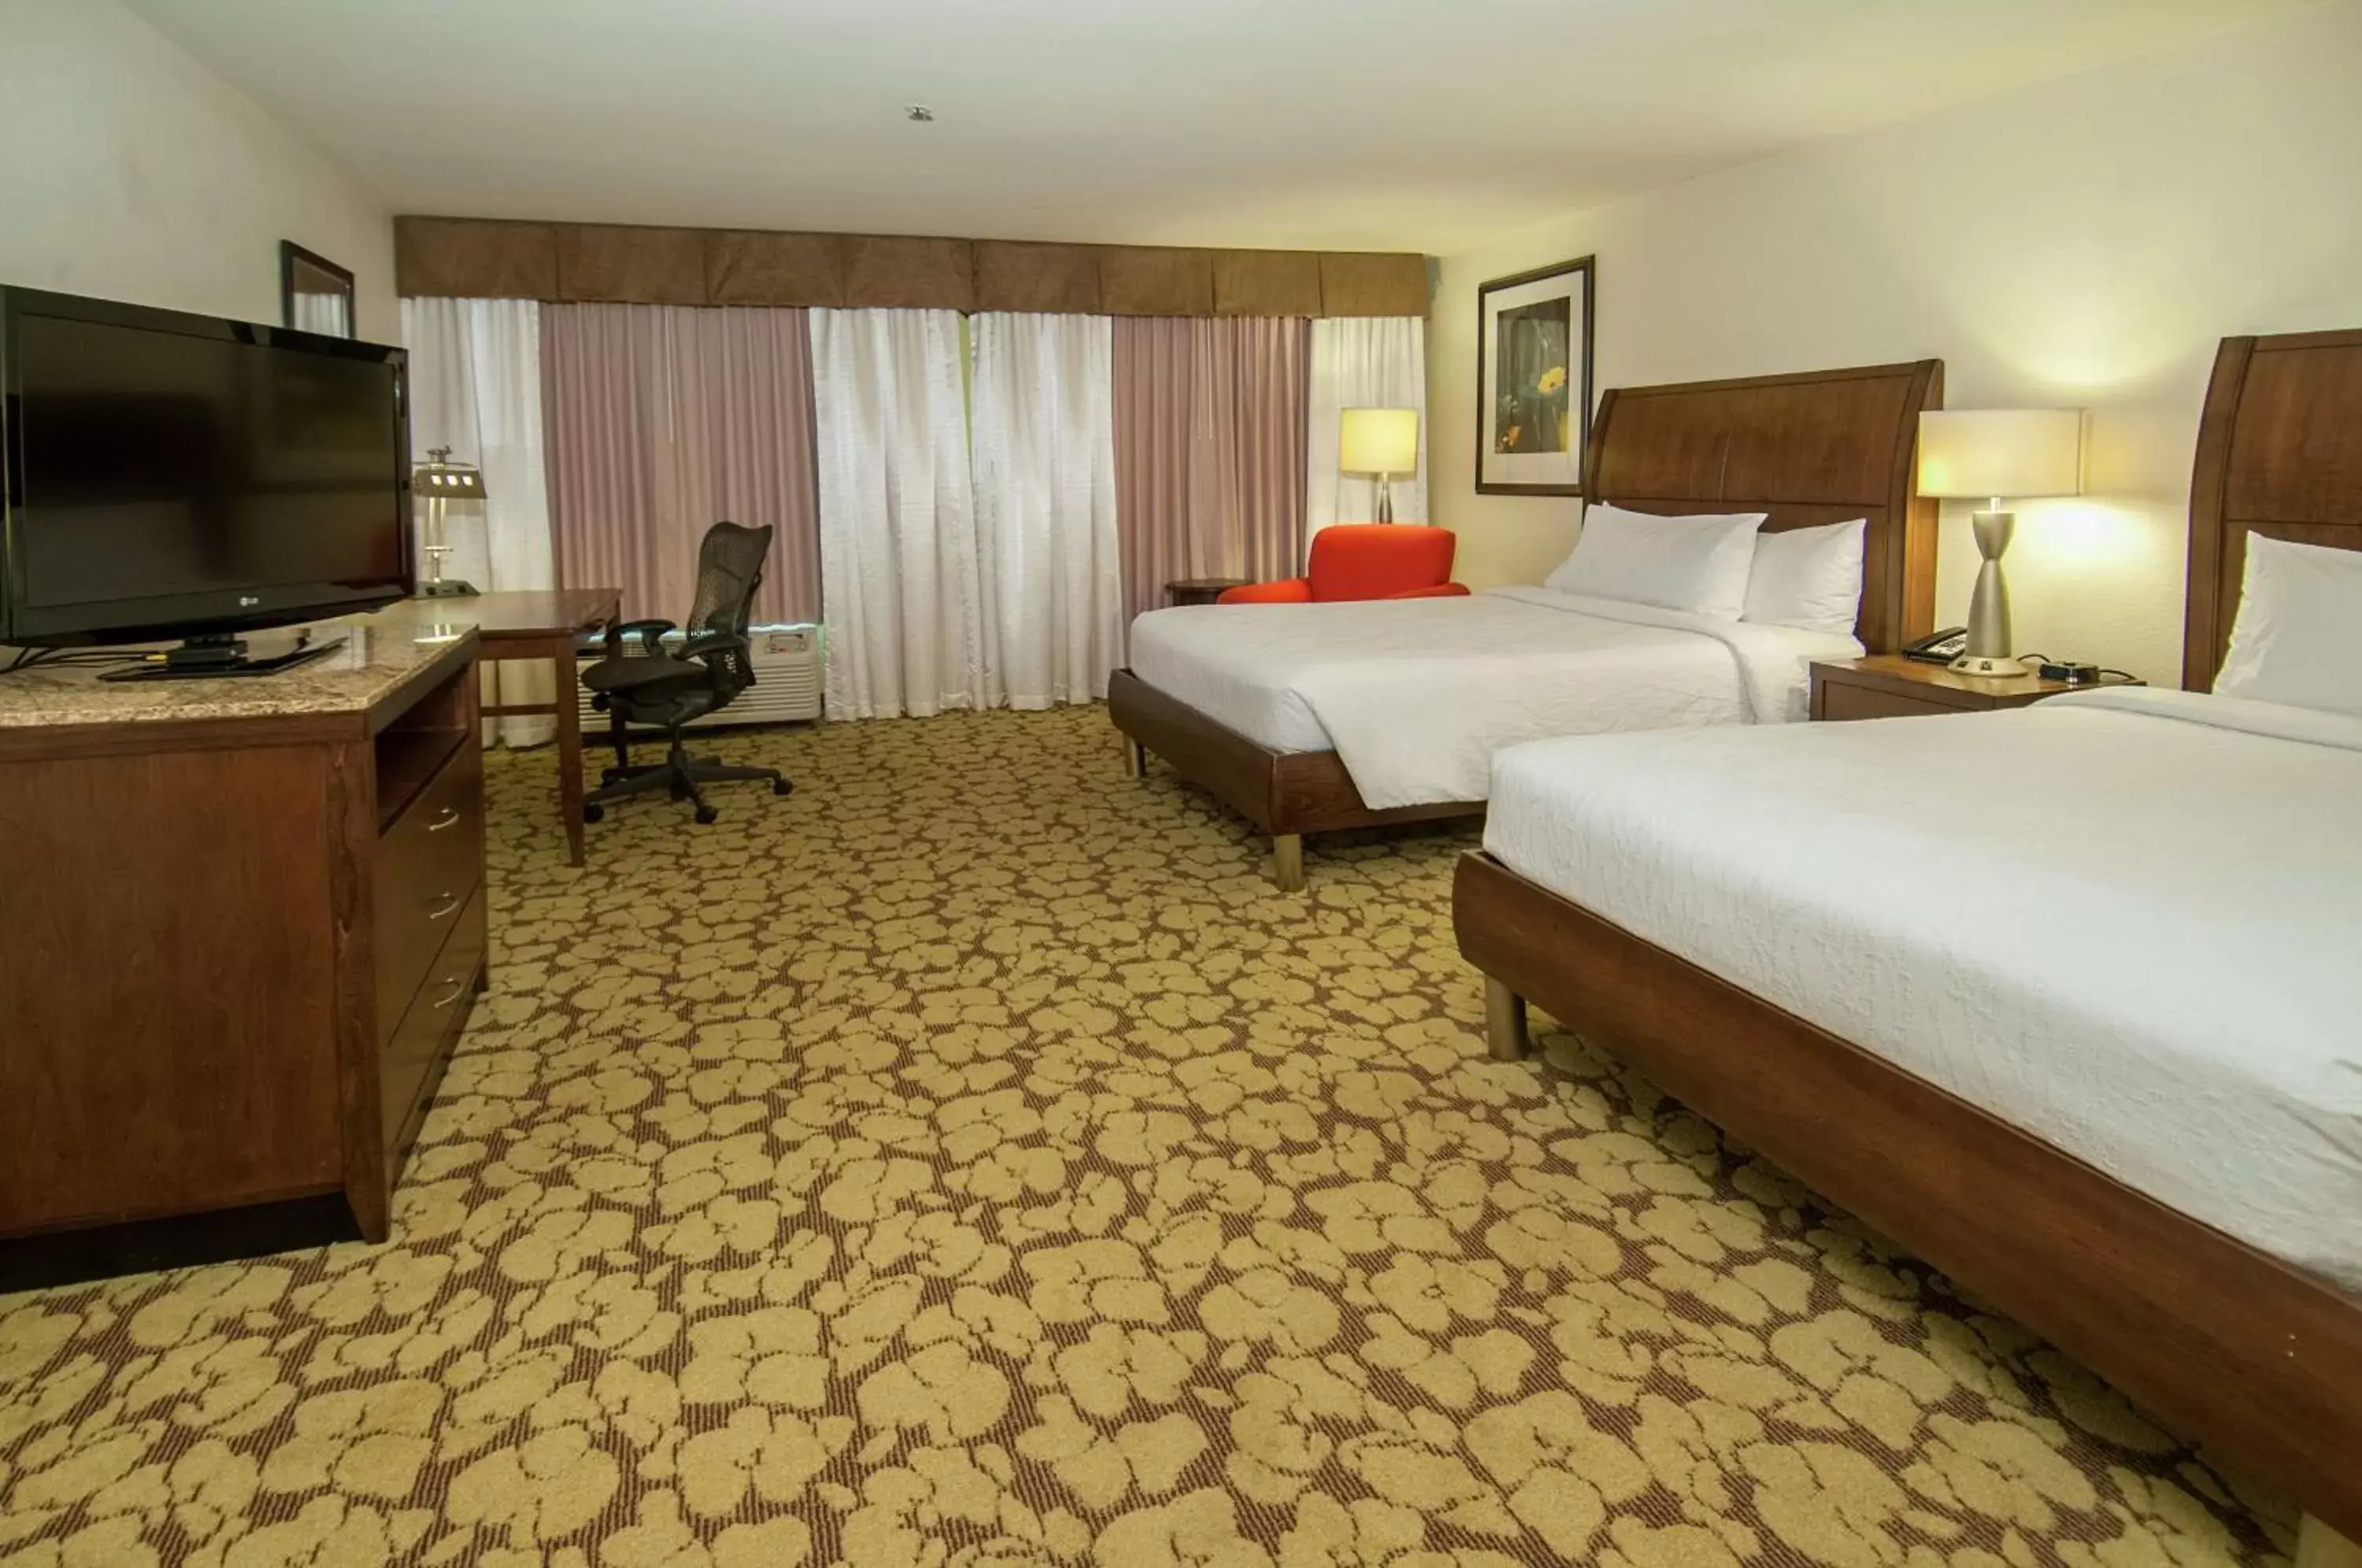 Bedroom, TV/Entertainment Center in Hilton Garden Inn New Orleans Airport